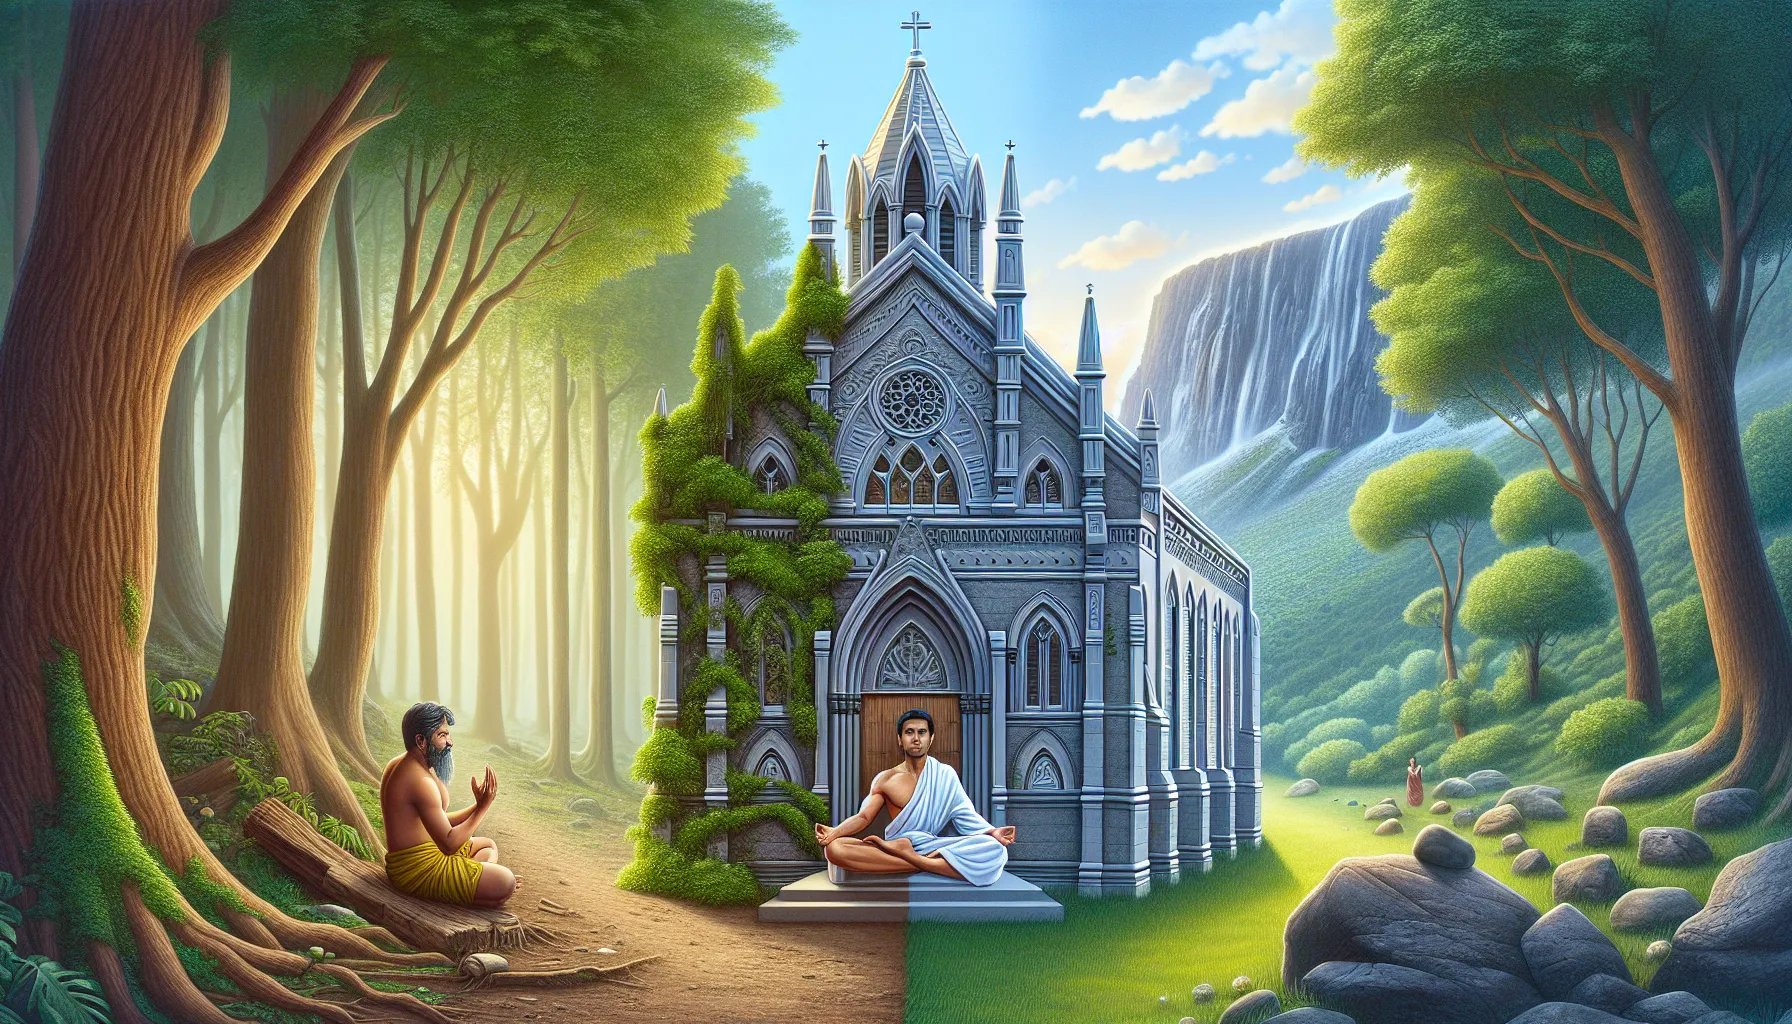 Imagen que muestra una comparativa entre una iglesia y una persona meditando en la naturaleza, representando la diferencia entre religión y espiritualidad.